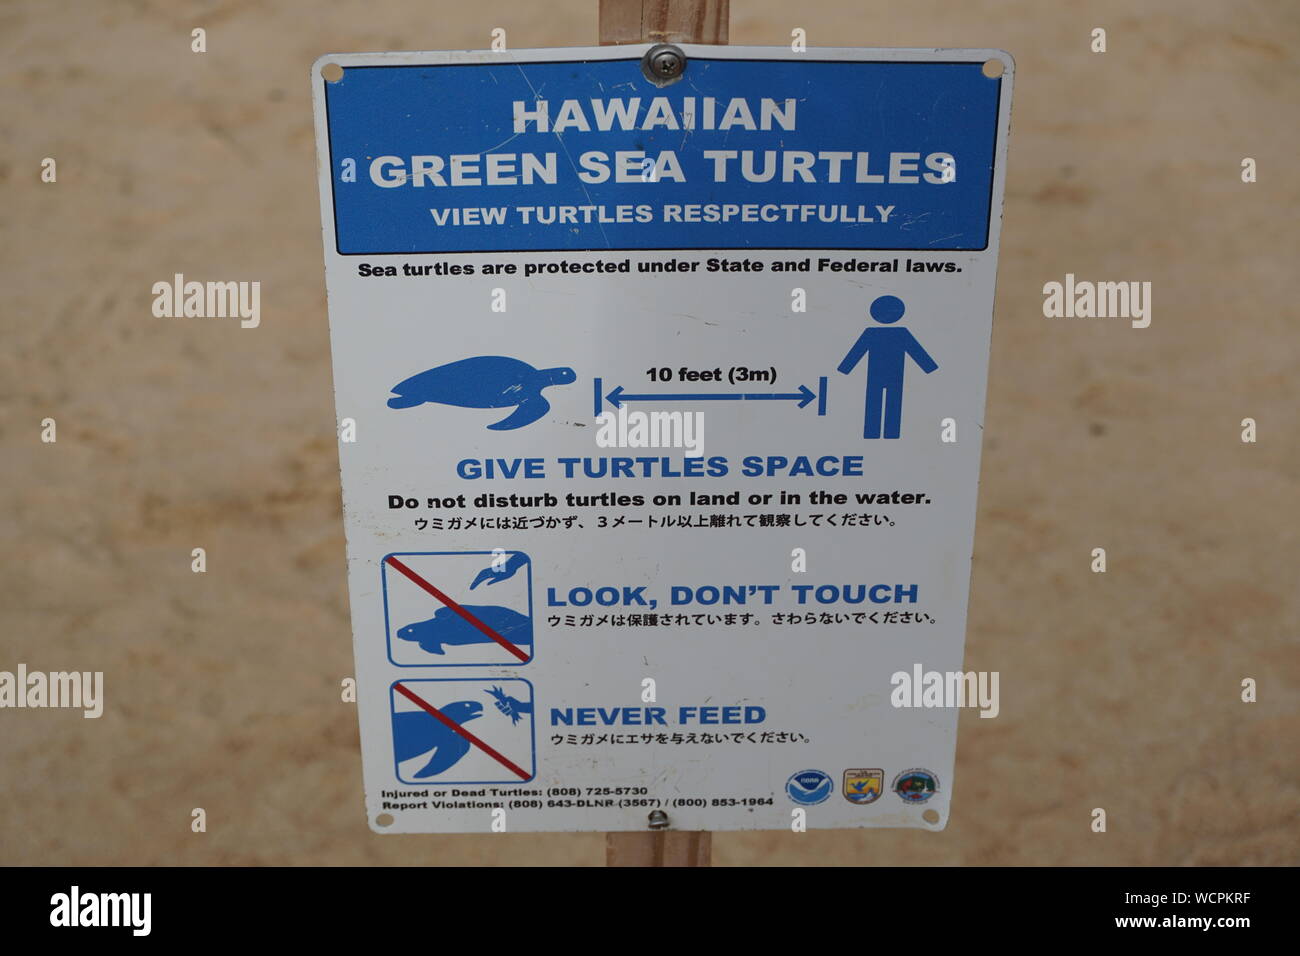 Schildkröten ansehen Respecfürchtig - Beschilderung erinnert Strandbesucher daran, ihren Abstand zu gefährdeten Hawaii Green Sea Turtles zu halten Stockfoto